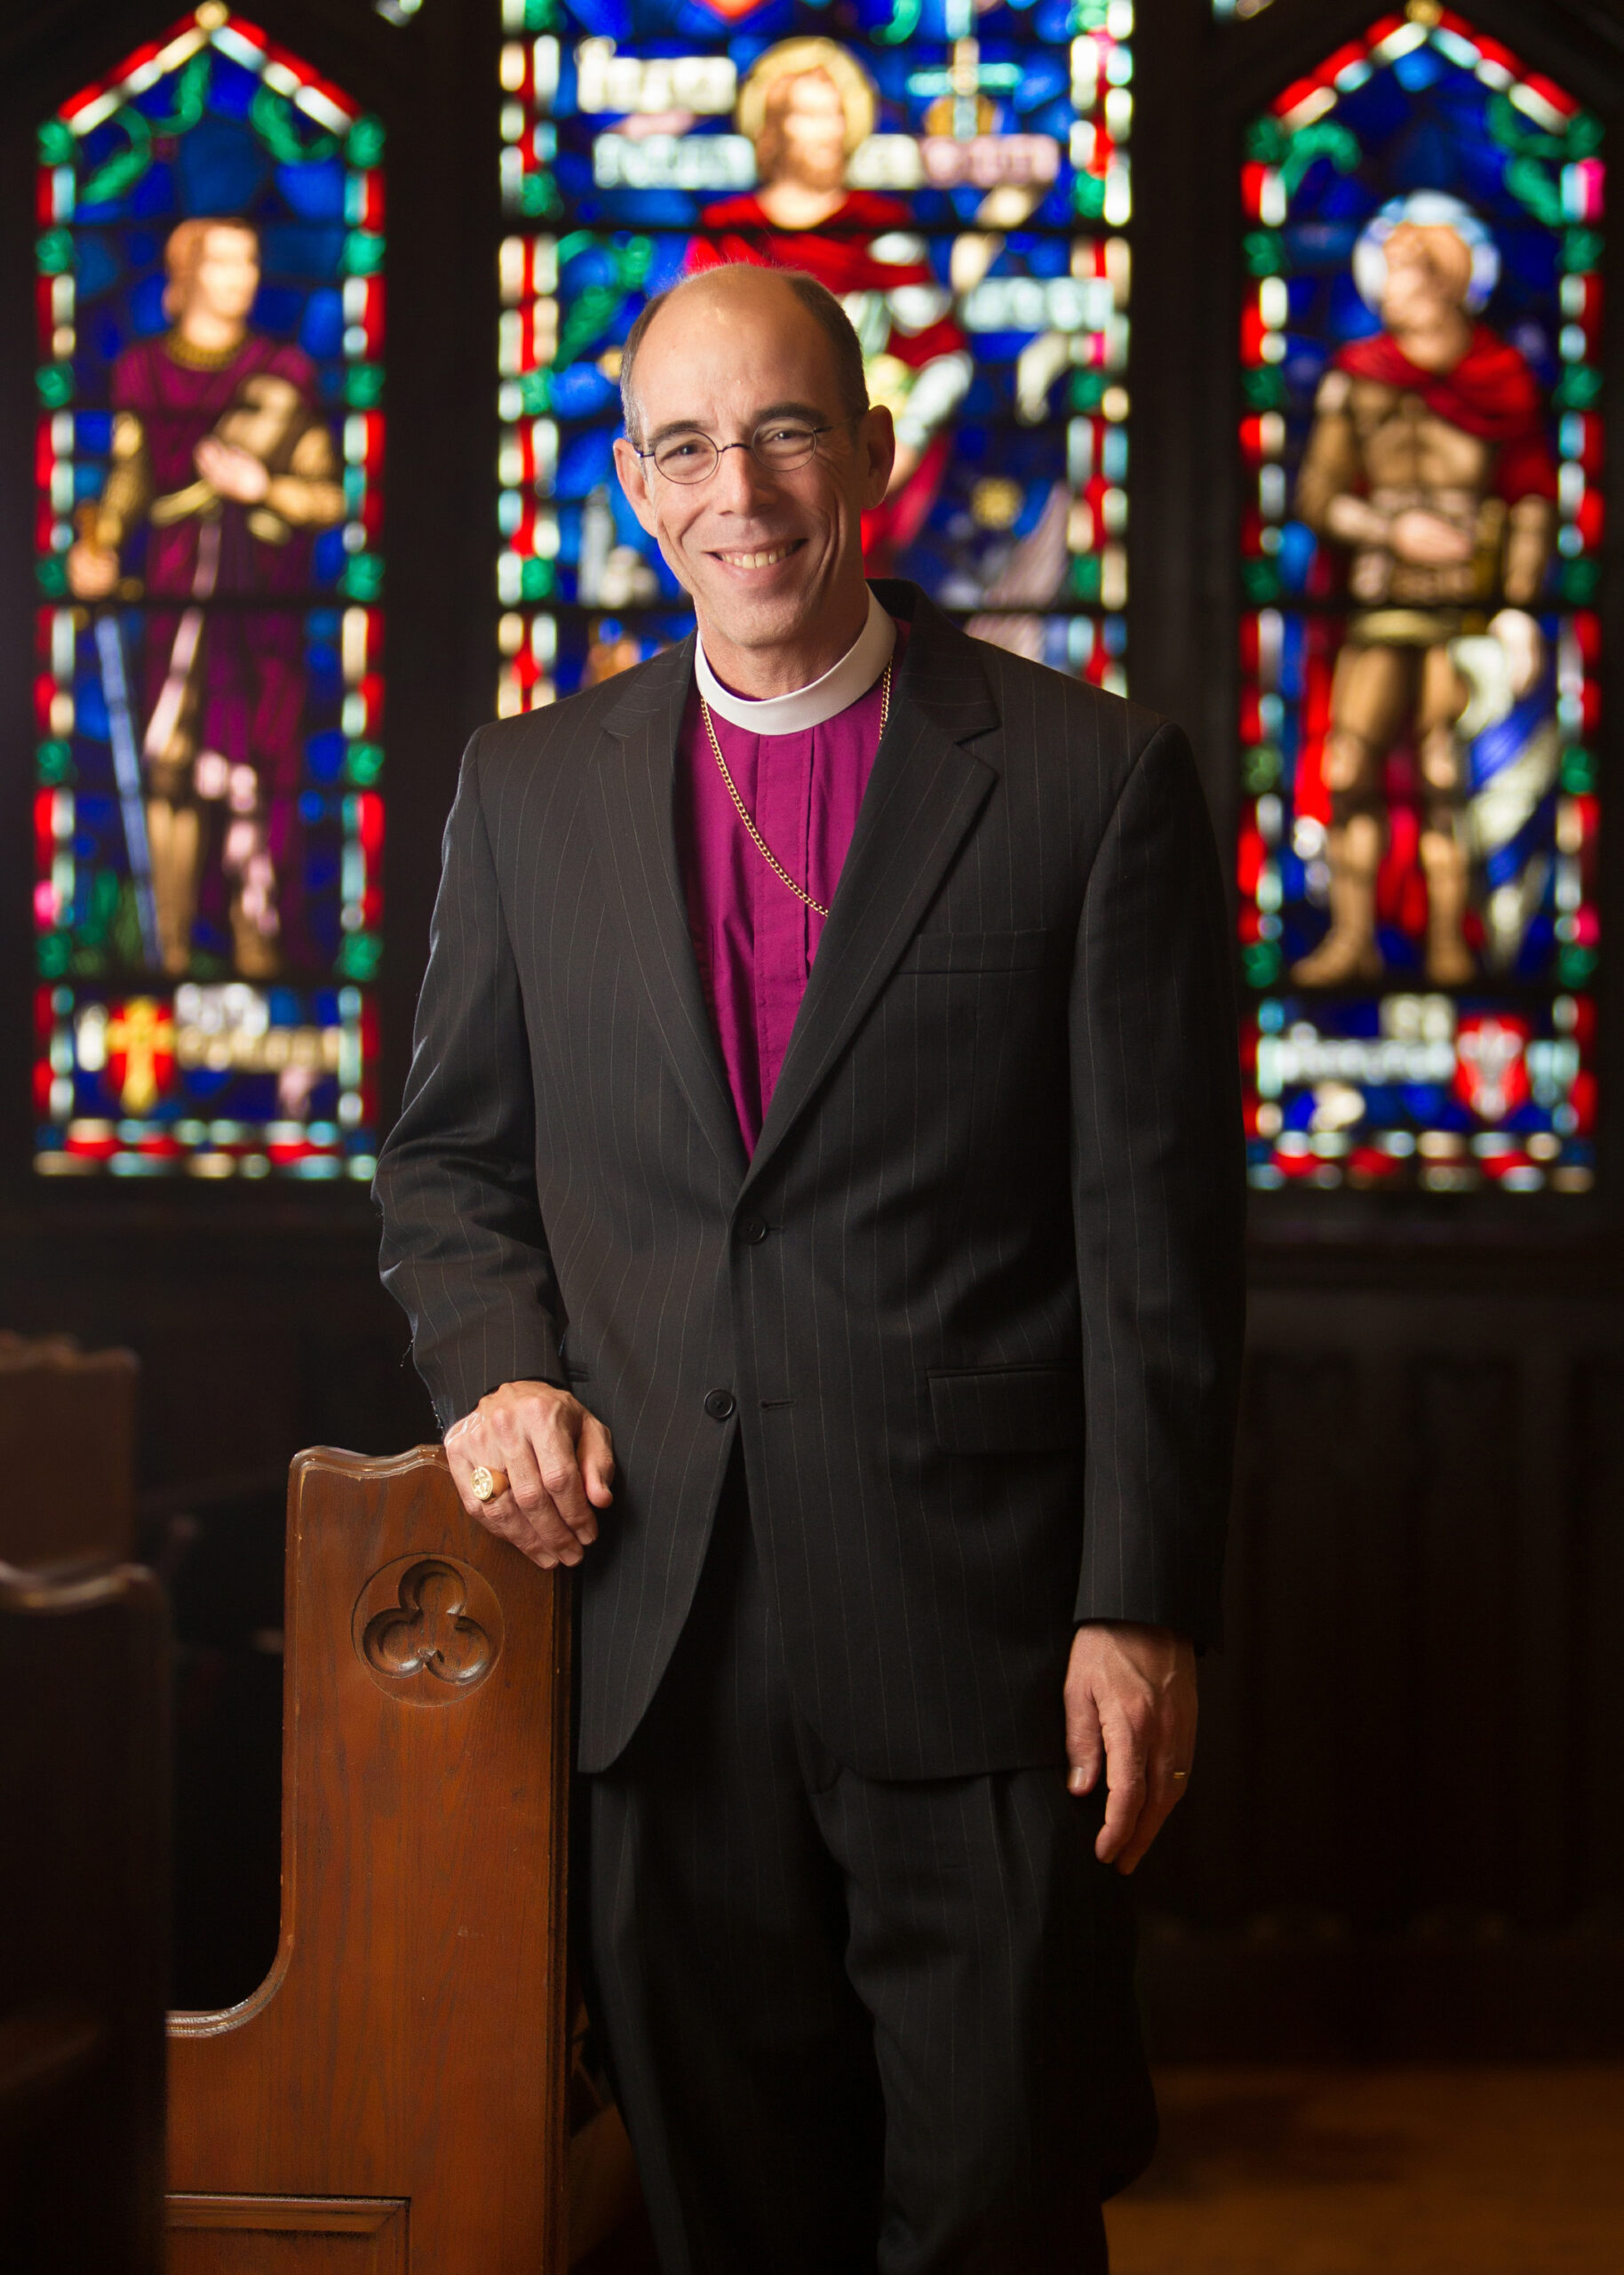 The Rt. Rev. Brian R. Seage